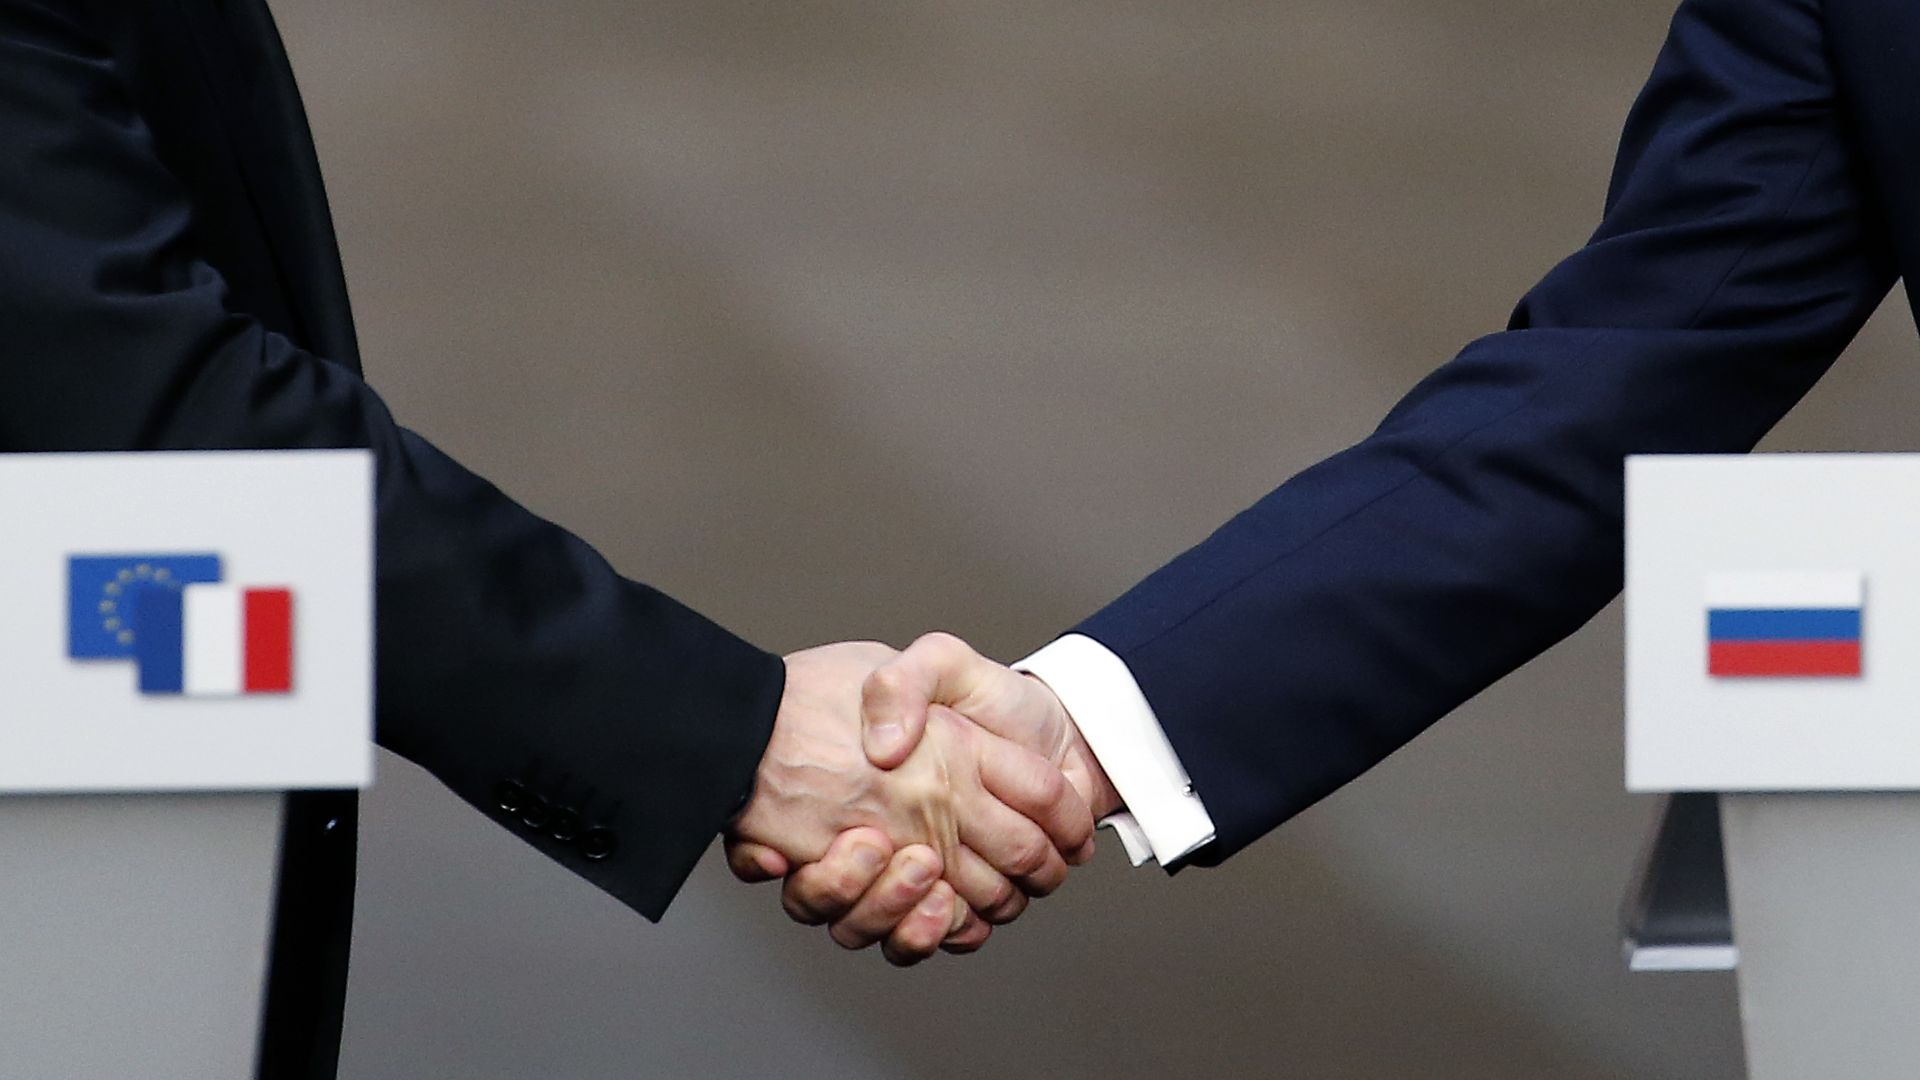 Putin's hand and Macron's hand during a handshake.